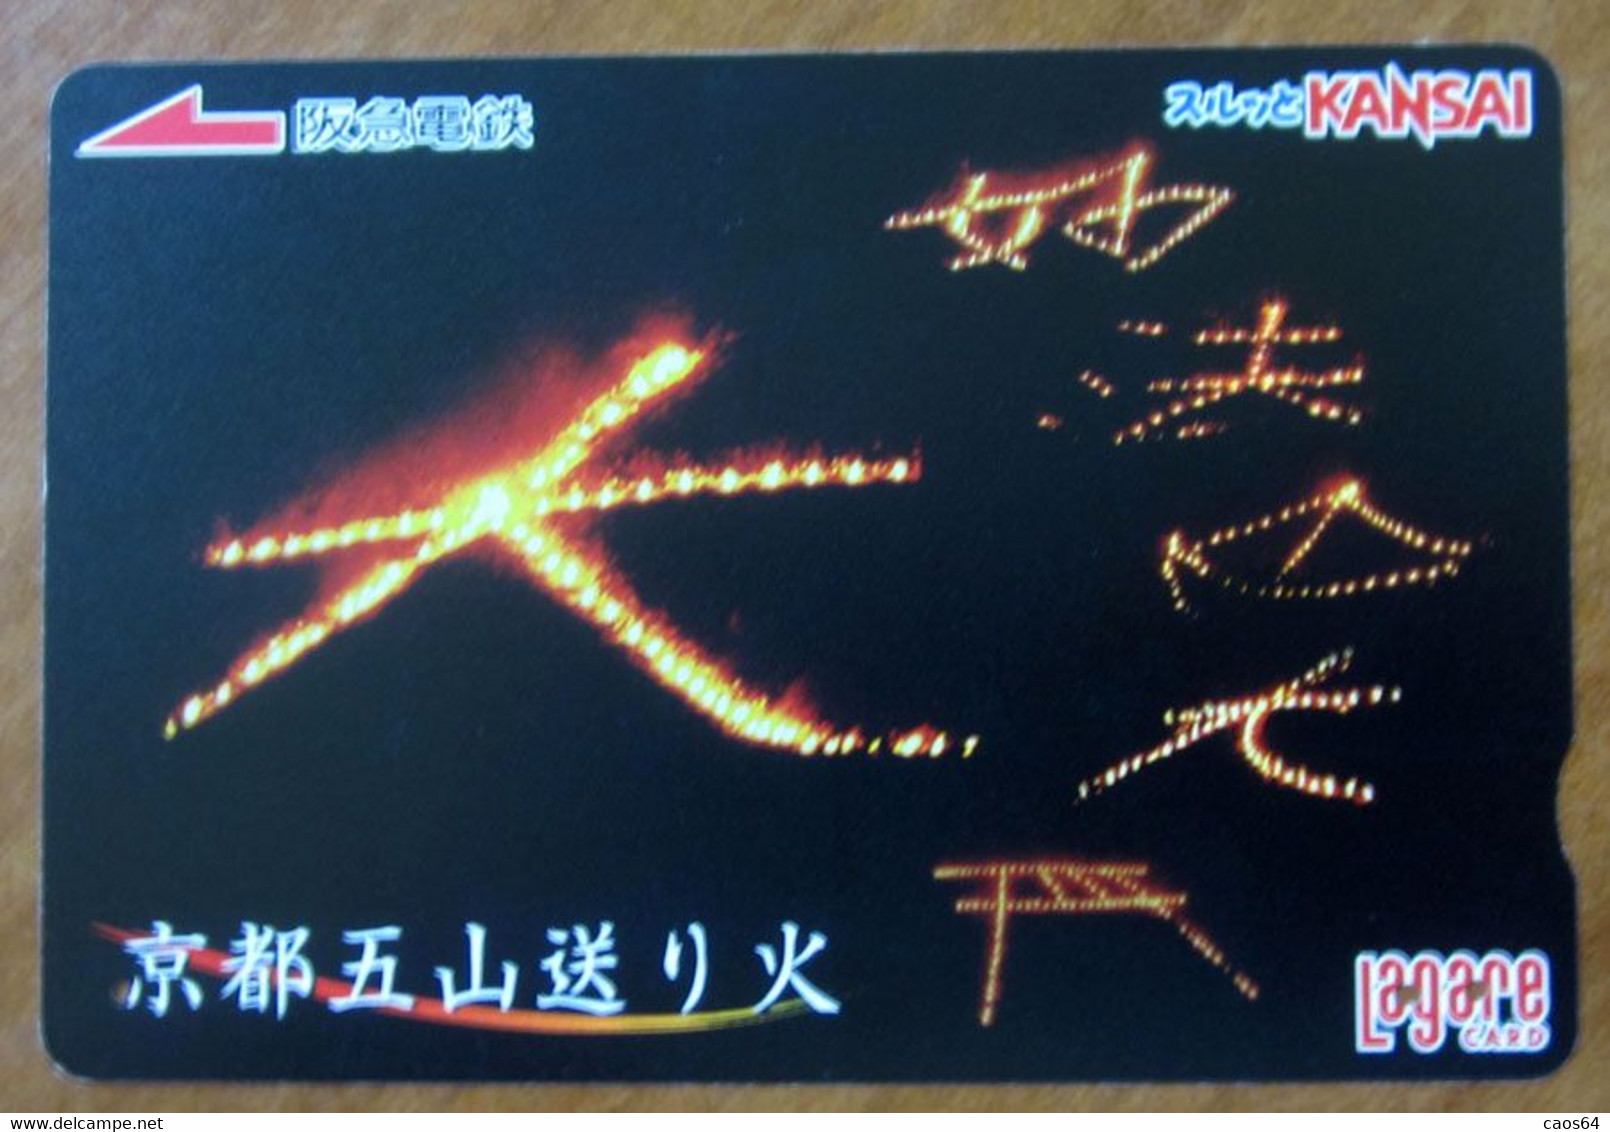 GIAPPONE Ticket Biglietto Alfabeto Lettere - Kansai Railway  Card 1.000 ¥ - Usato - Wereld